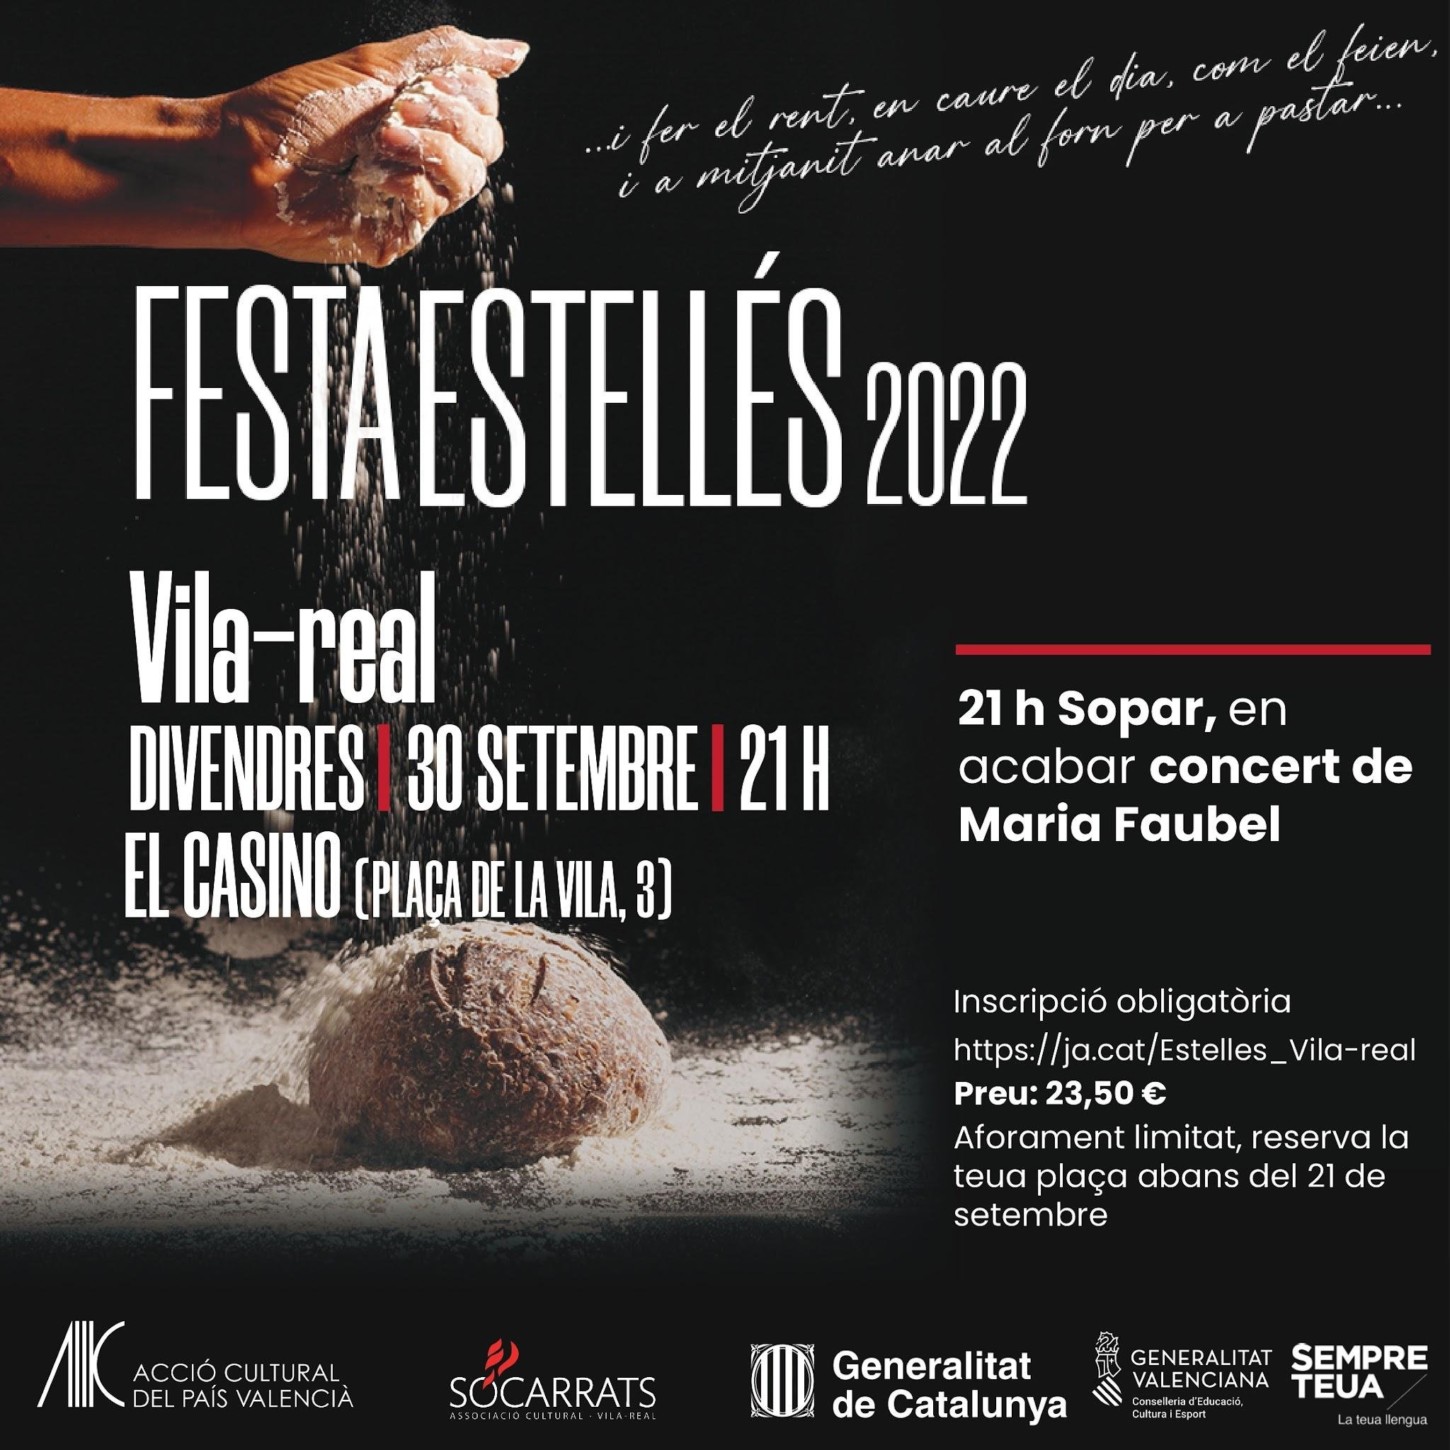 Us convidem a la Festa Estellés 2022